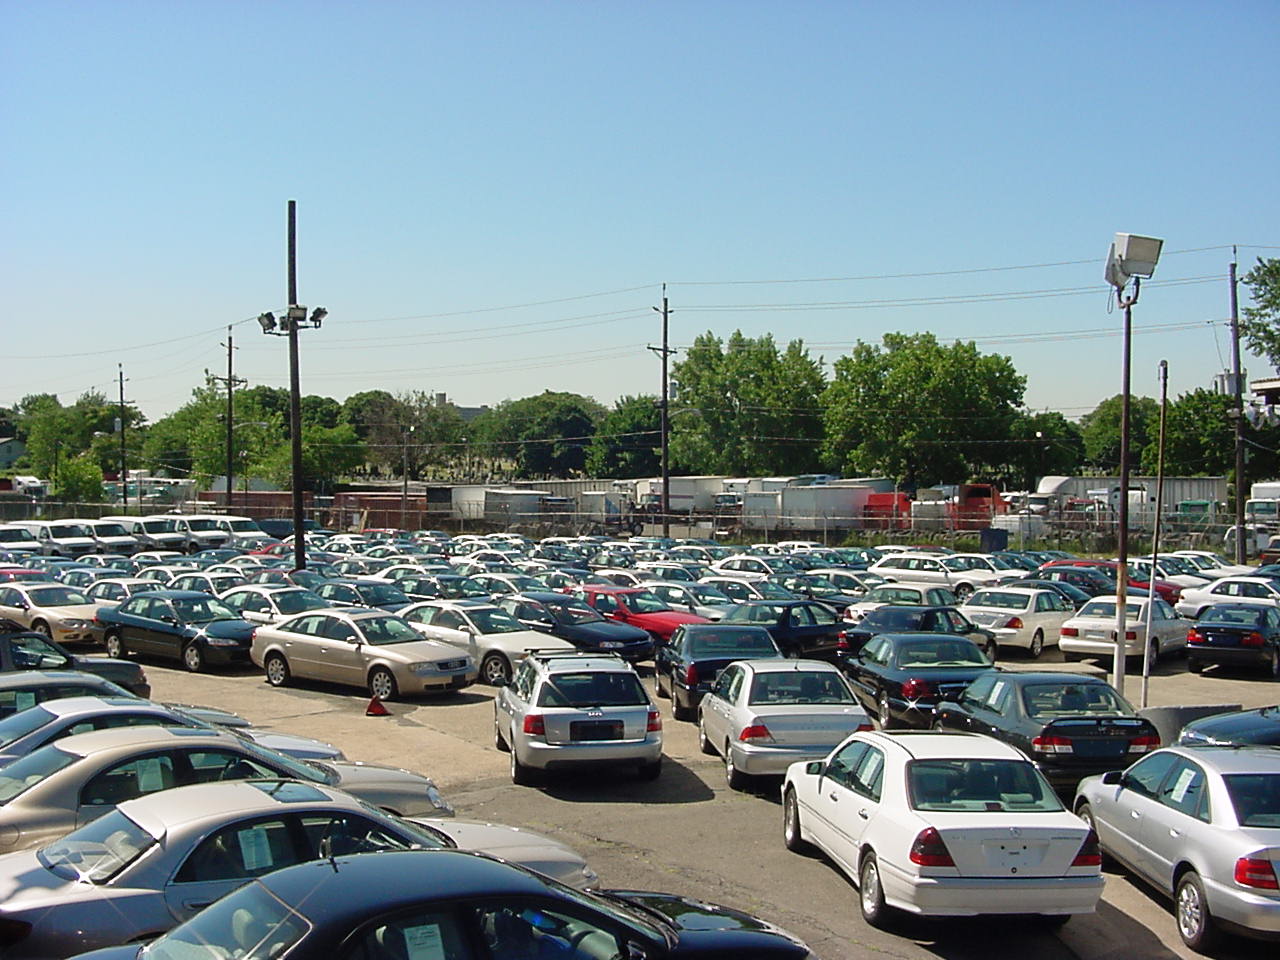 المؤسسة العامة للتجارة الخارجية: مزاد لبيع 108 سيارات وآليات في اللاذقية وطرطوس